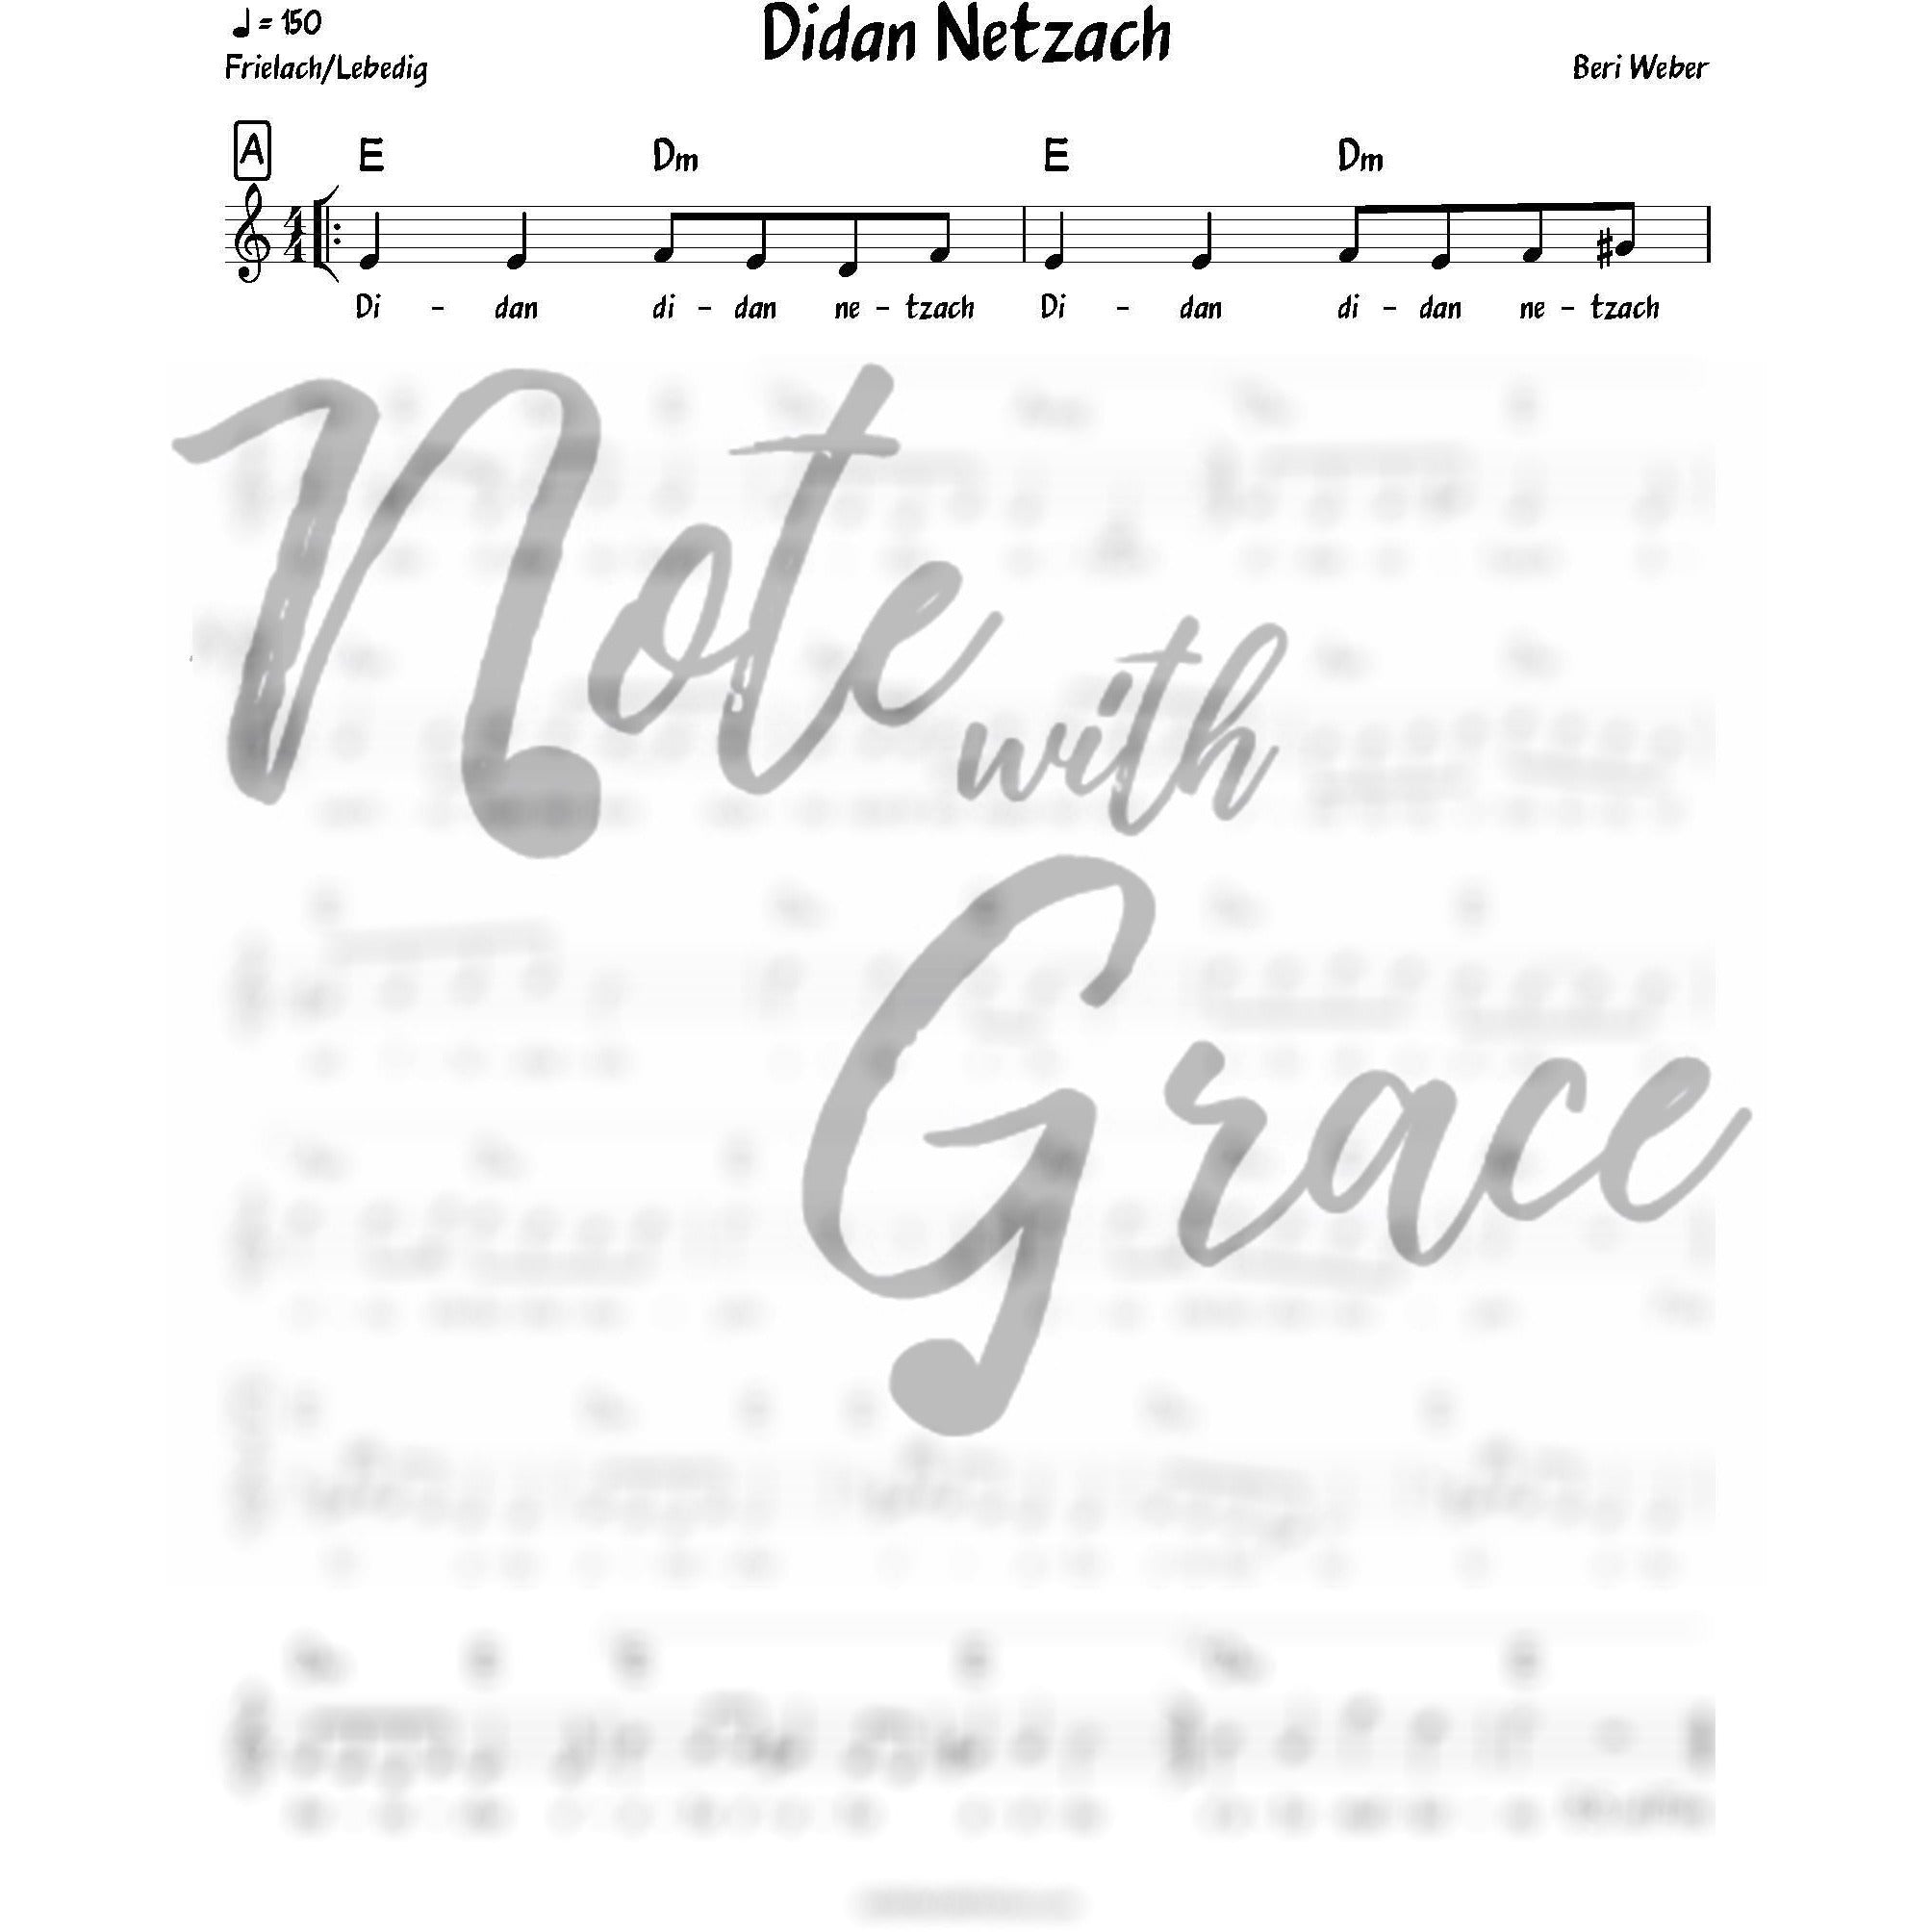 Didan Netzach Lead Sheet (Beri Weber) Album: One Heart-Sheet music-NoteWithGrace.com